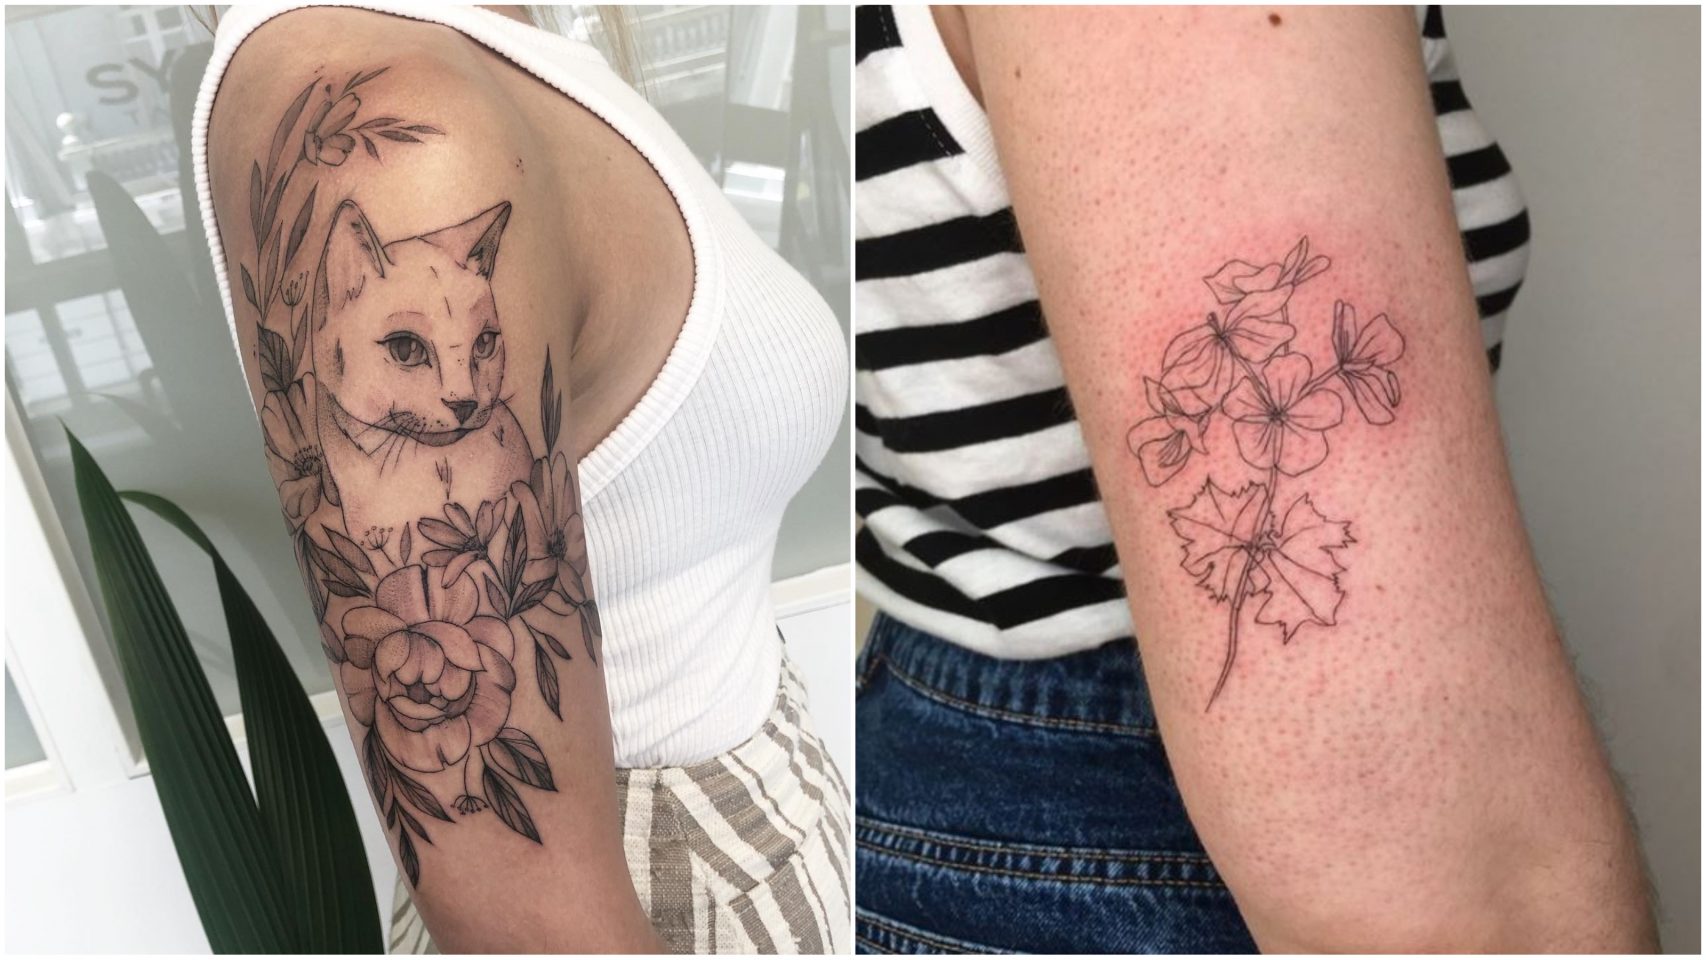 Mejores estudios de tatuaje en Madrid - Tatuajes Linea Fina